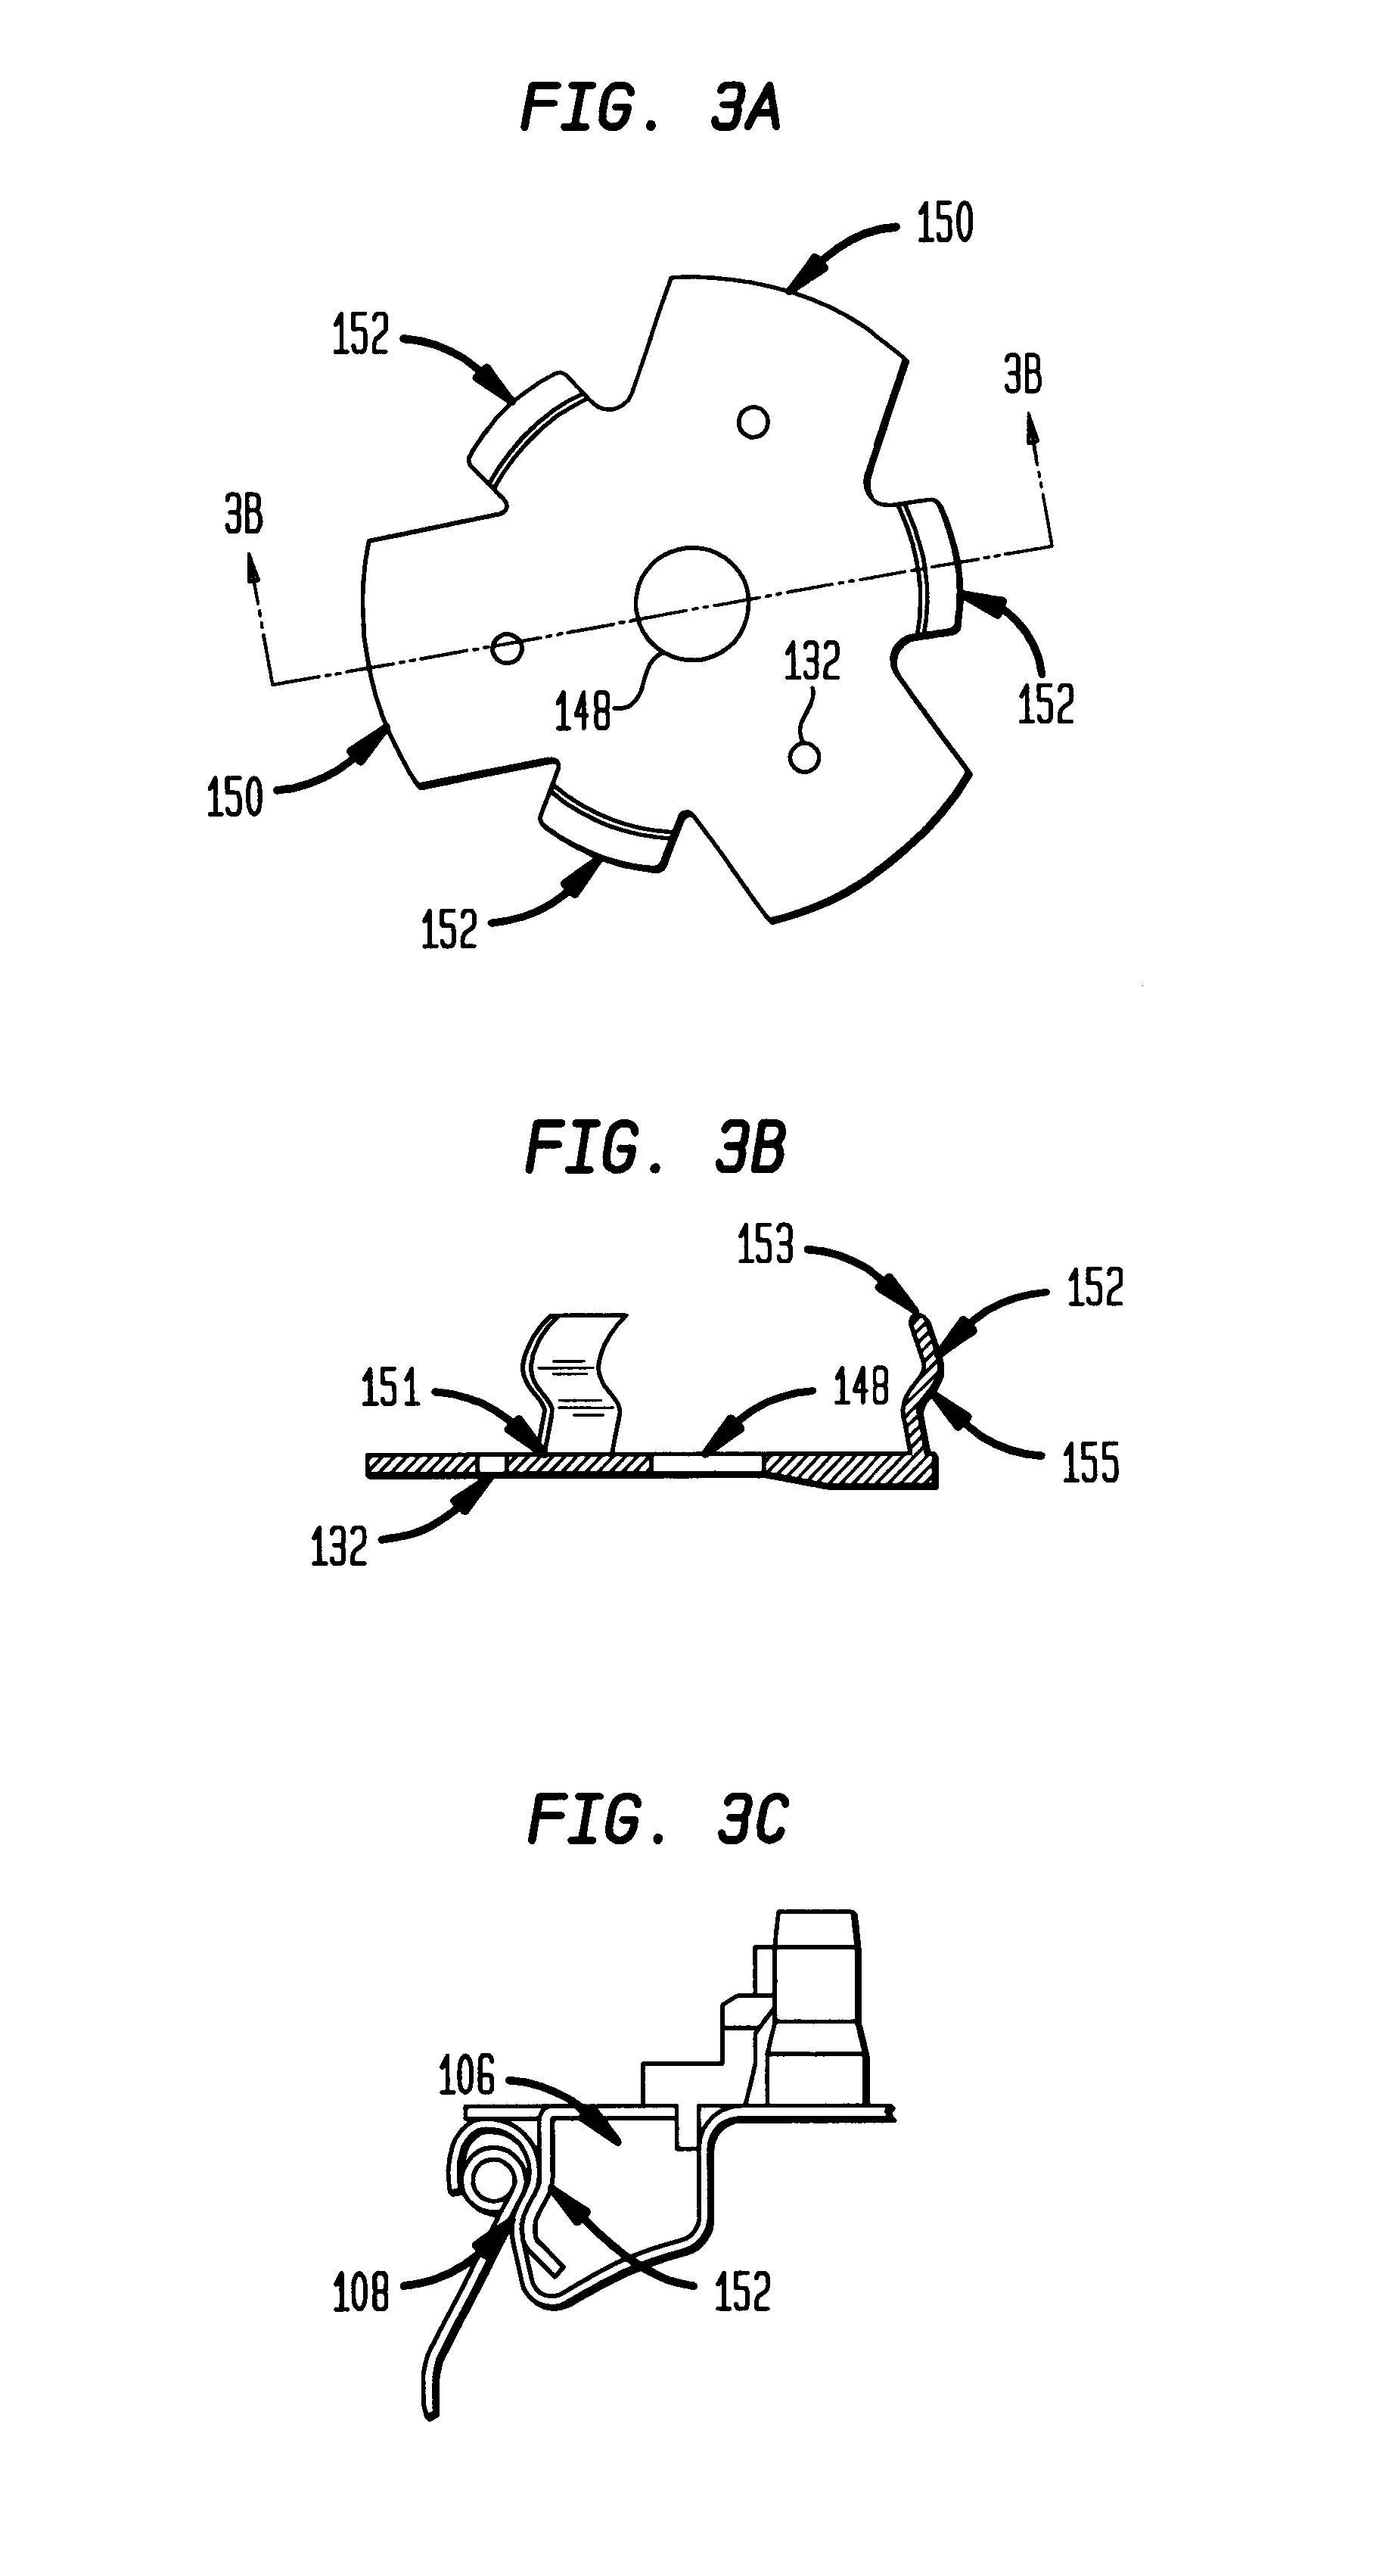 Fuel transfer adaptor